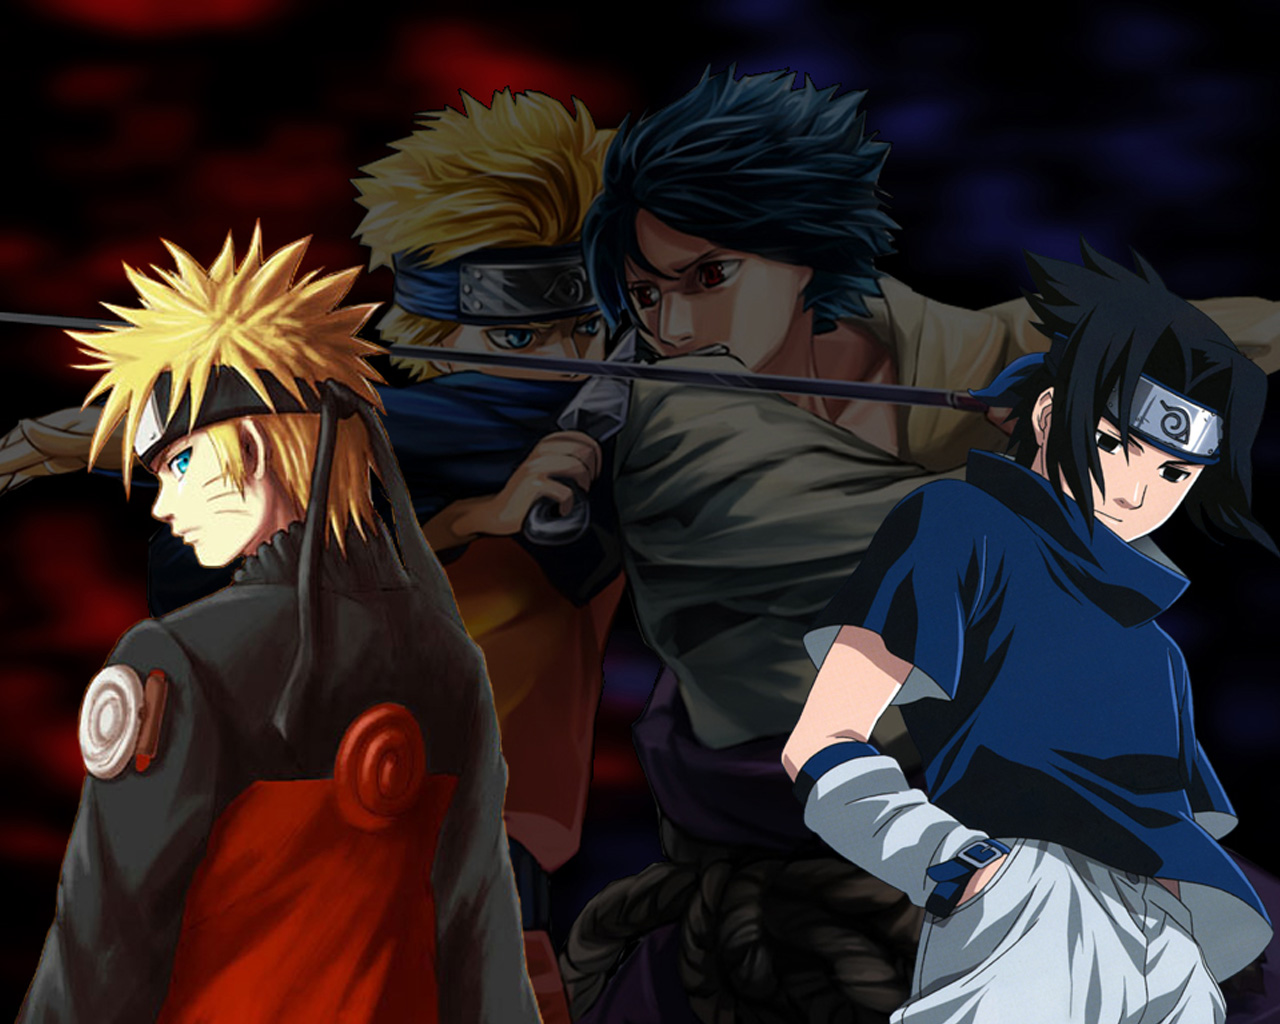 Anime] Sasuke & Naruto | Tình bạn hay tình yêu - BiliBili